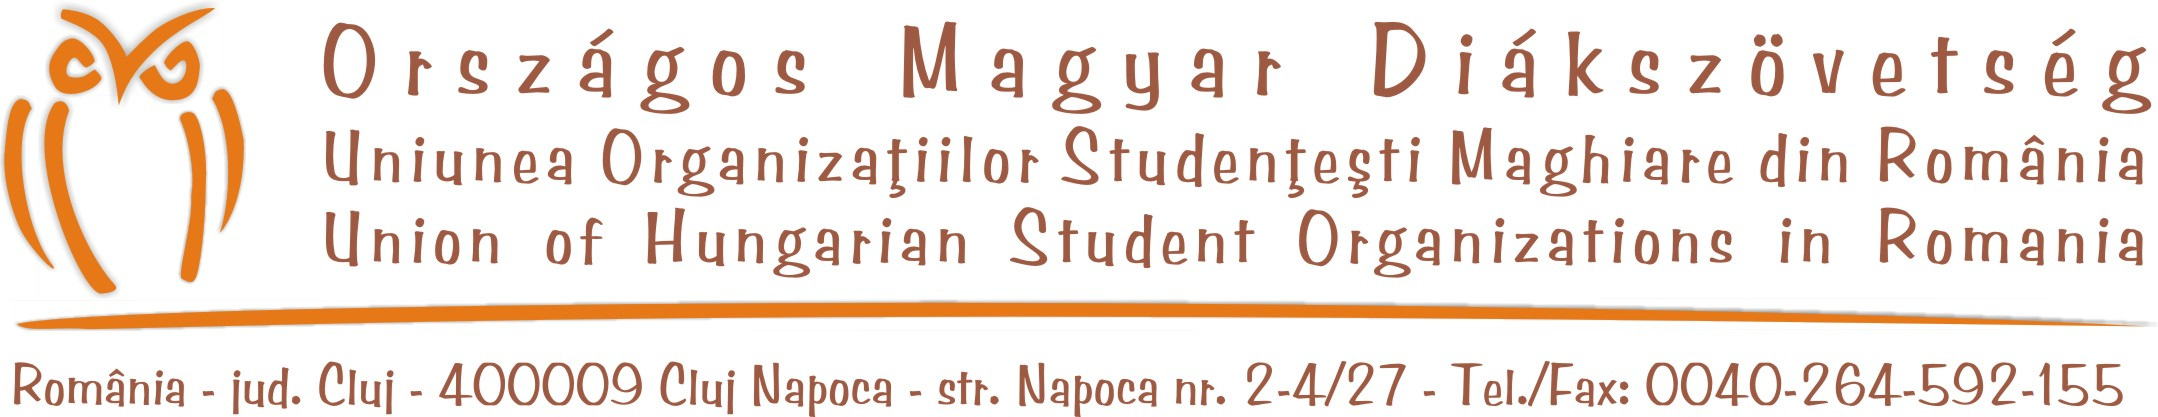 Romániai egyetemek magiszteri képzései Kedves diákok és érdeklődők, az alábbiakban egy olyan összeállítást találtok amiben megtalálható az összes romániai állami és magyar nyelvű egyházi- illetve